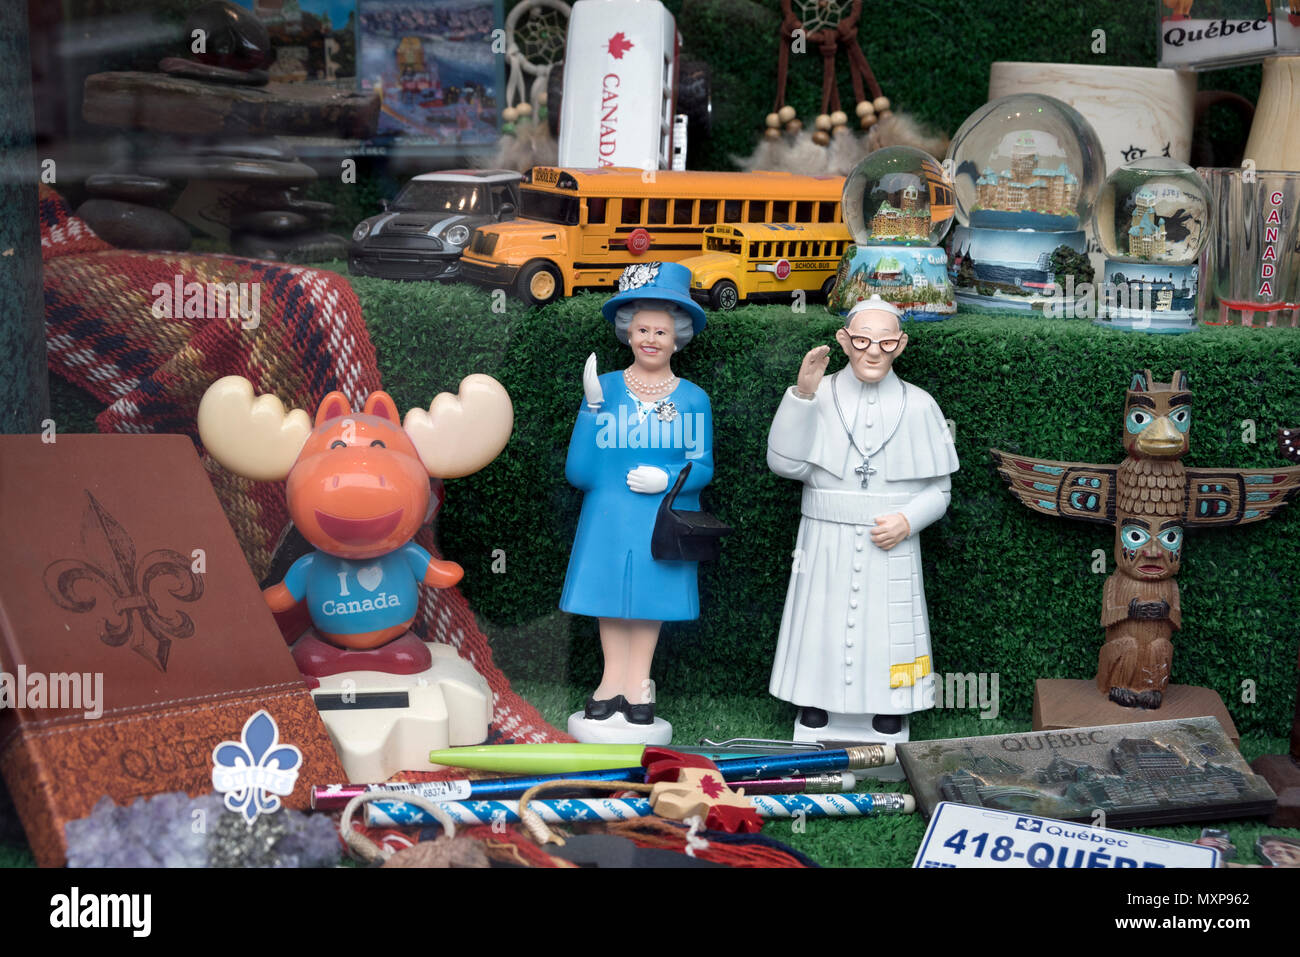 La ville de Québec, Canada. Souvenirs de voyage dans une vitrine, dont l'orignal, la Reine, le Pape et un autobus scolaire. Banque D'Images